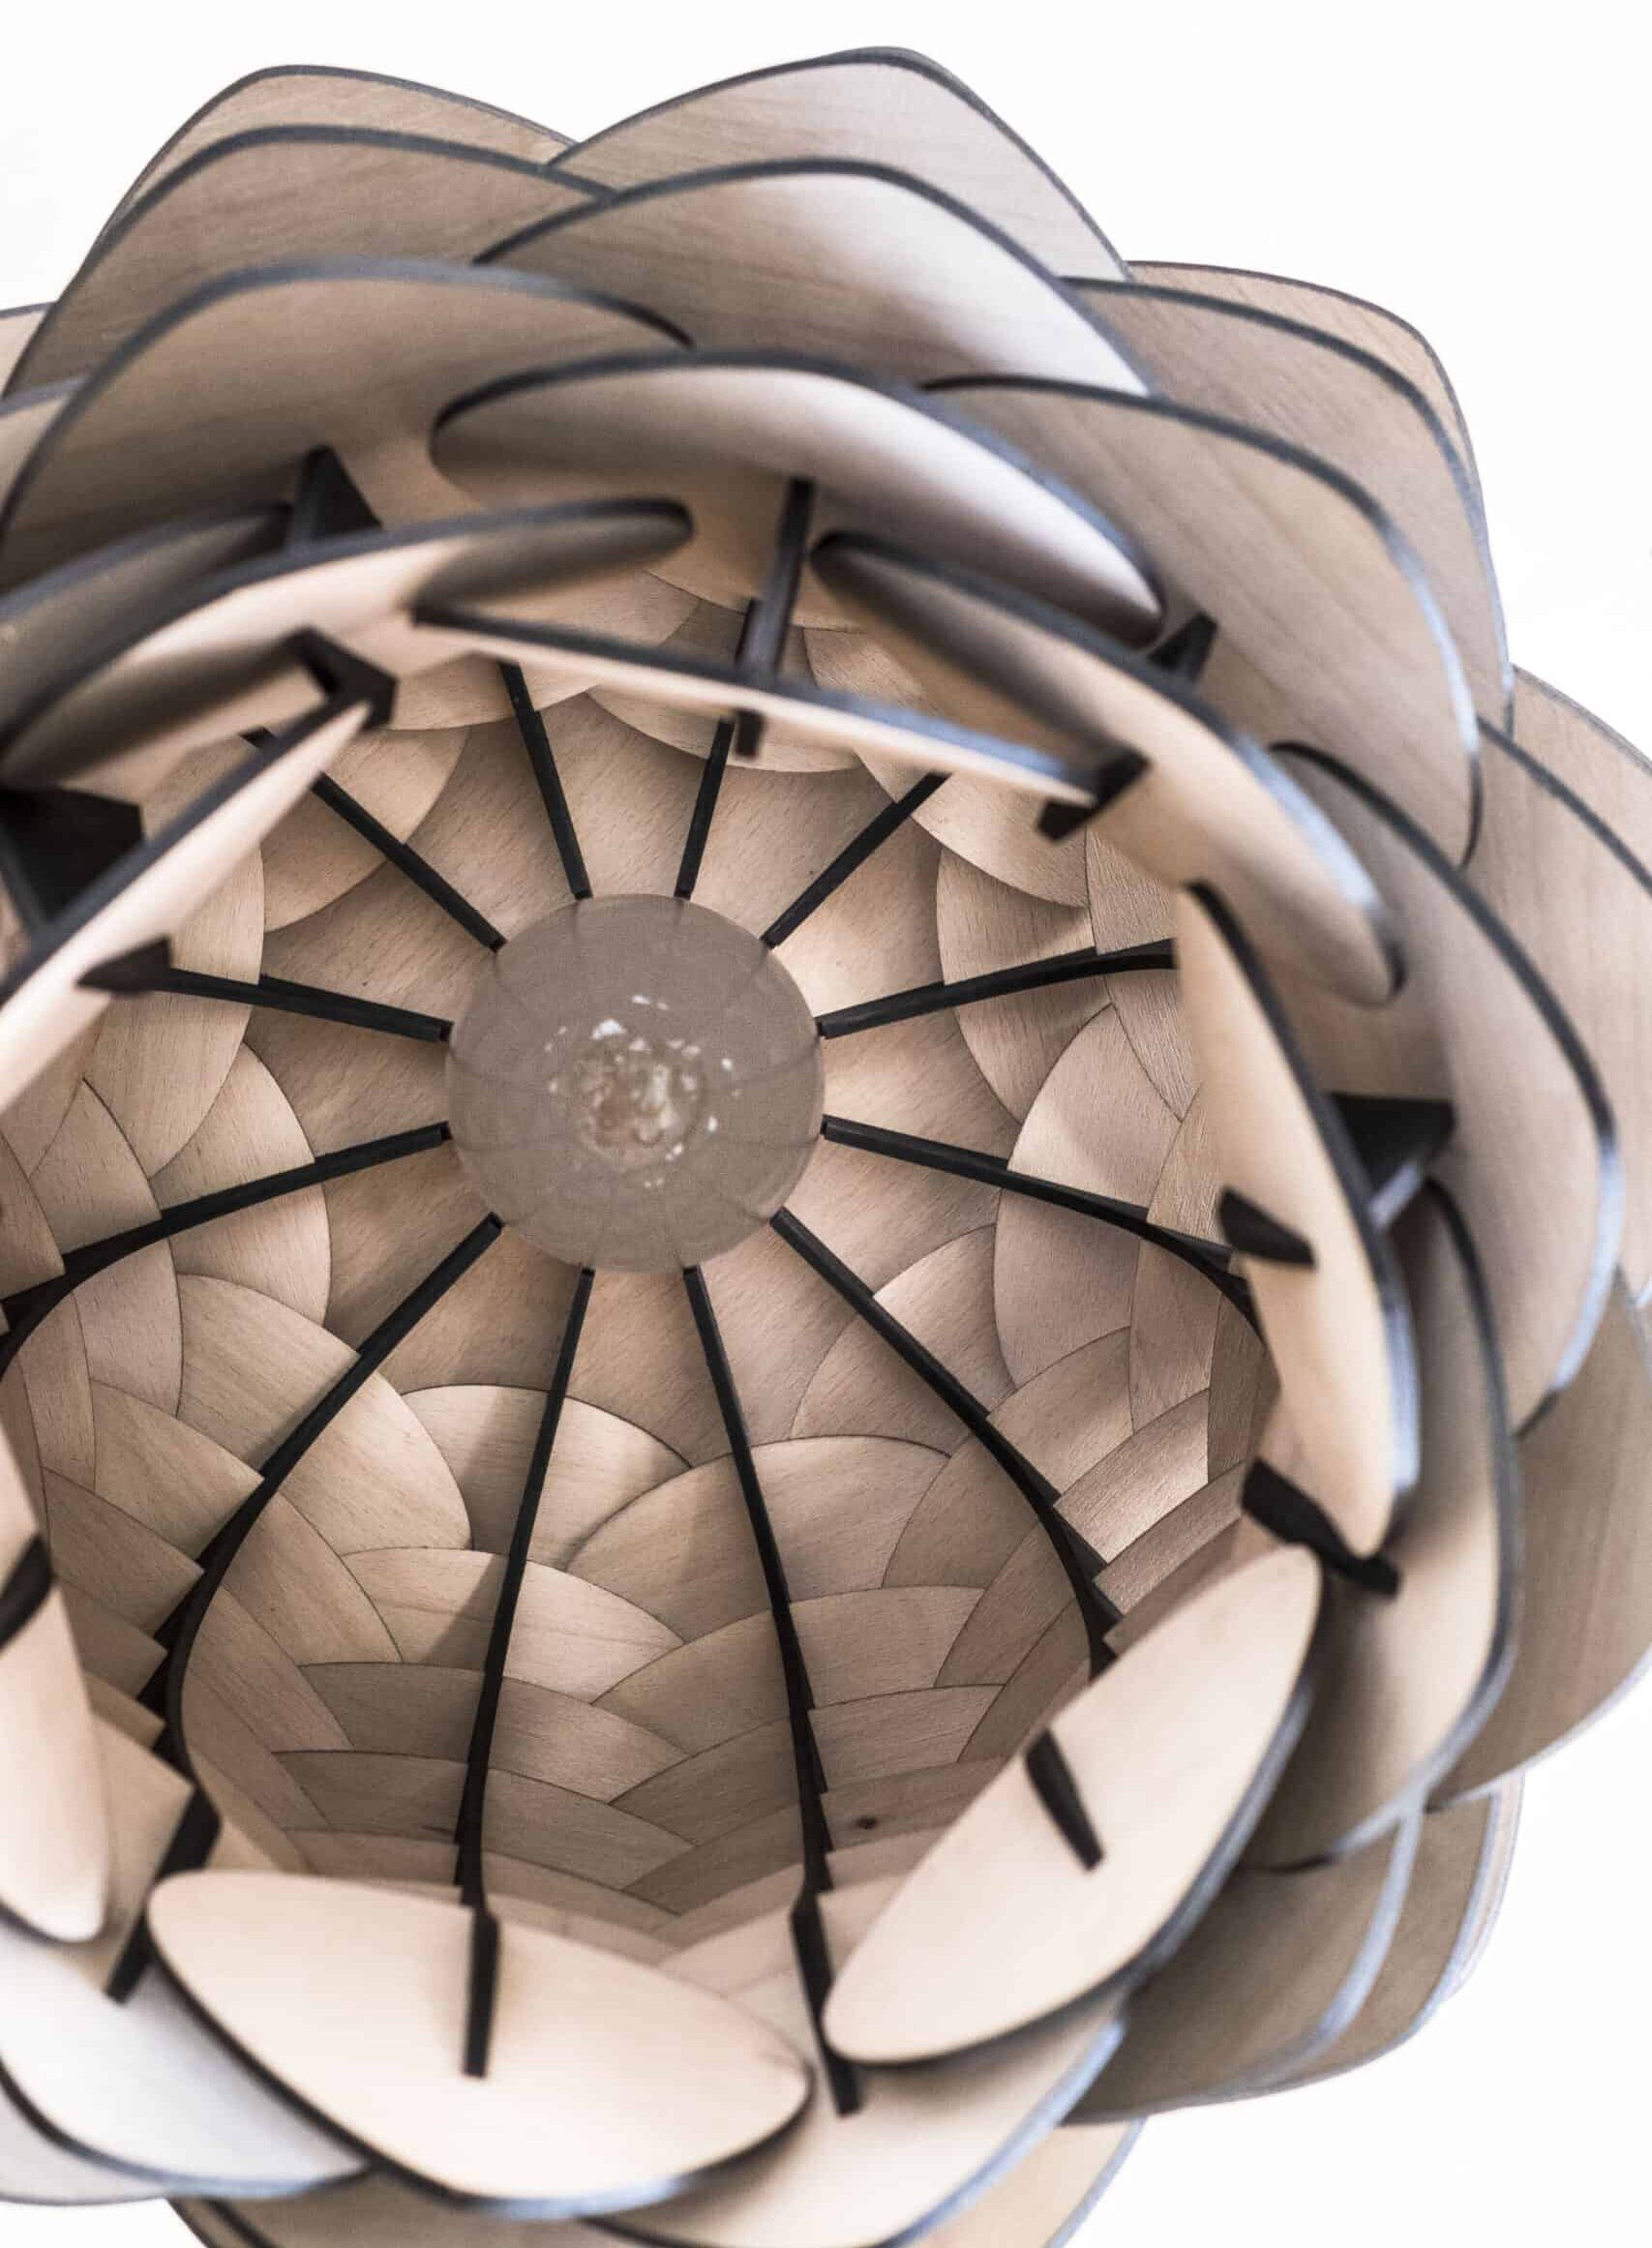 Freudenreich Interior Design | Hängelampe The Cone von Kairoz